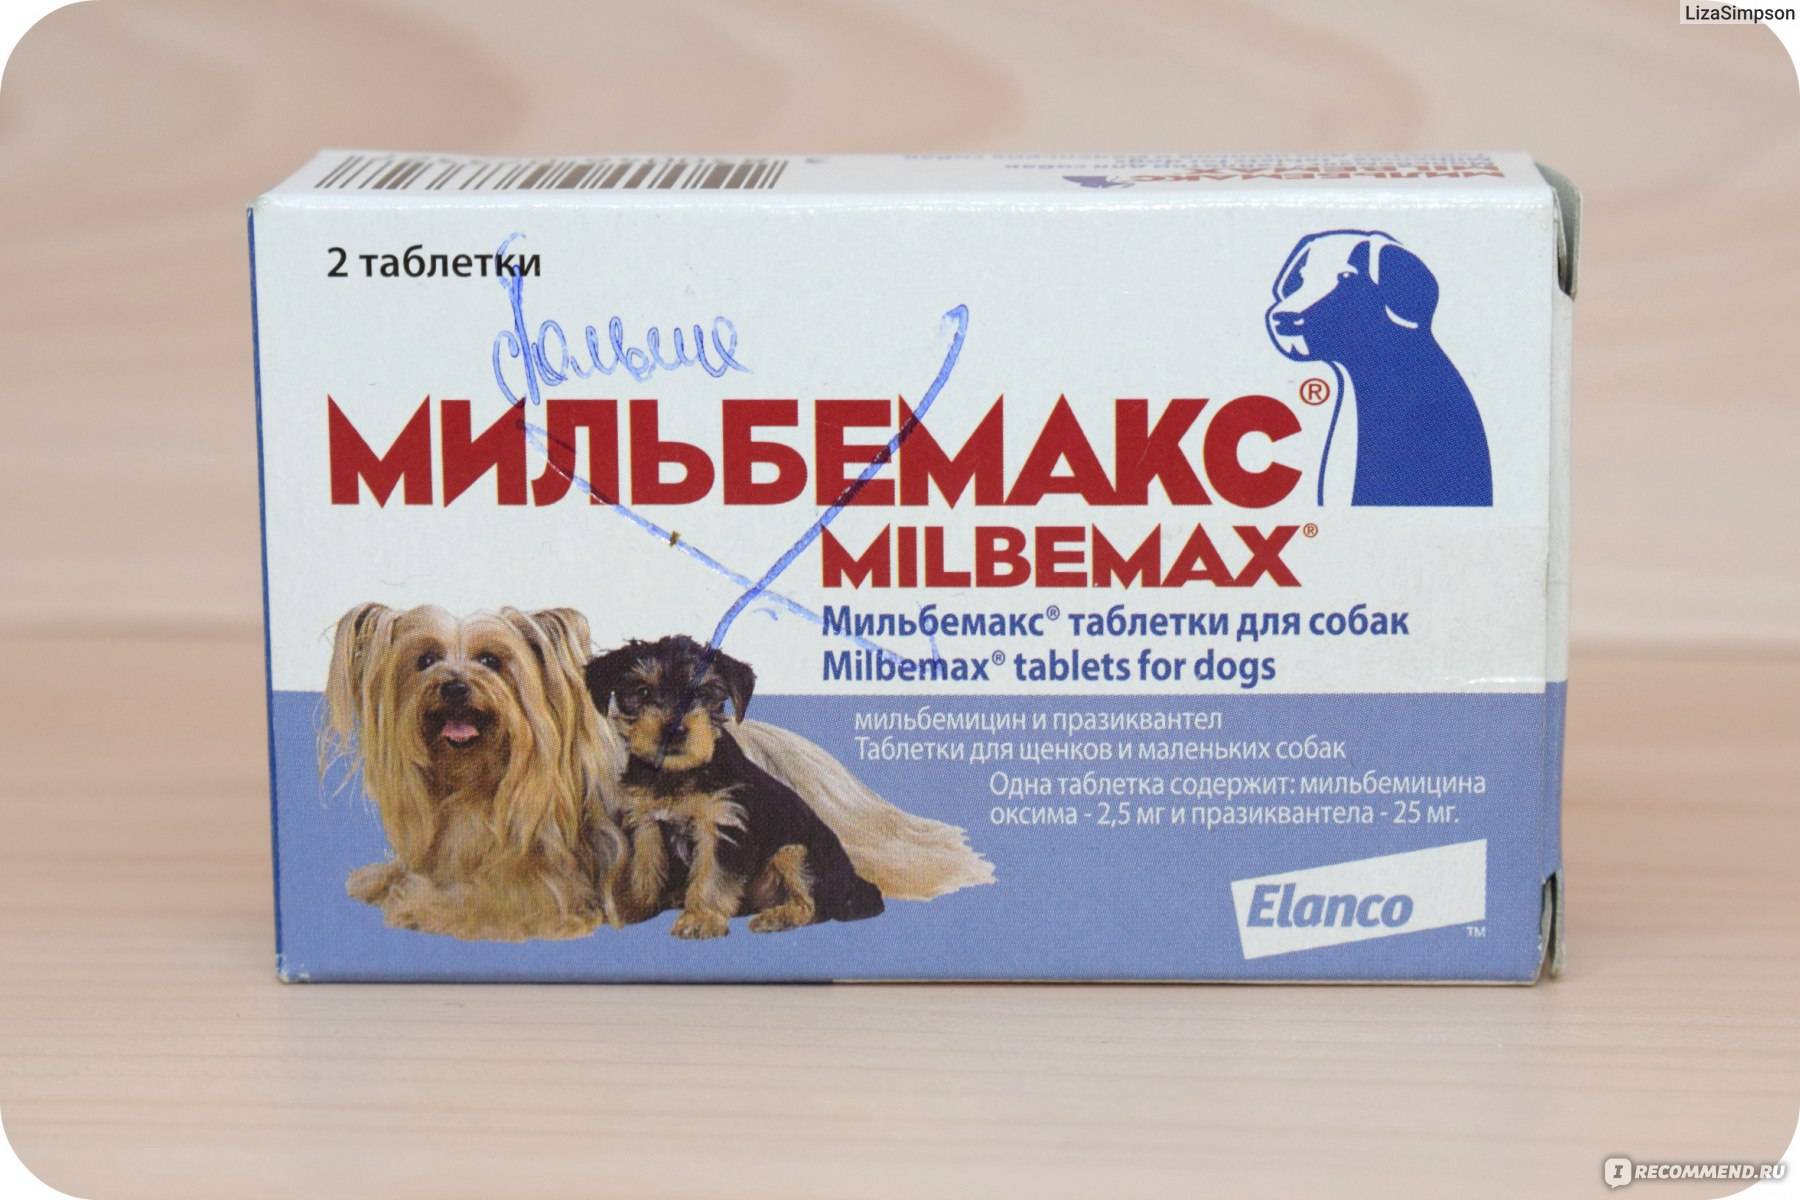 Зантак для кошек и собак инструкция по применению 
зантака в ветеринарии состав лекарства дозировка отзывы